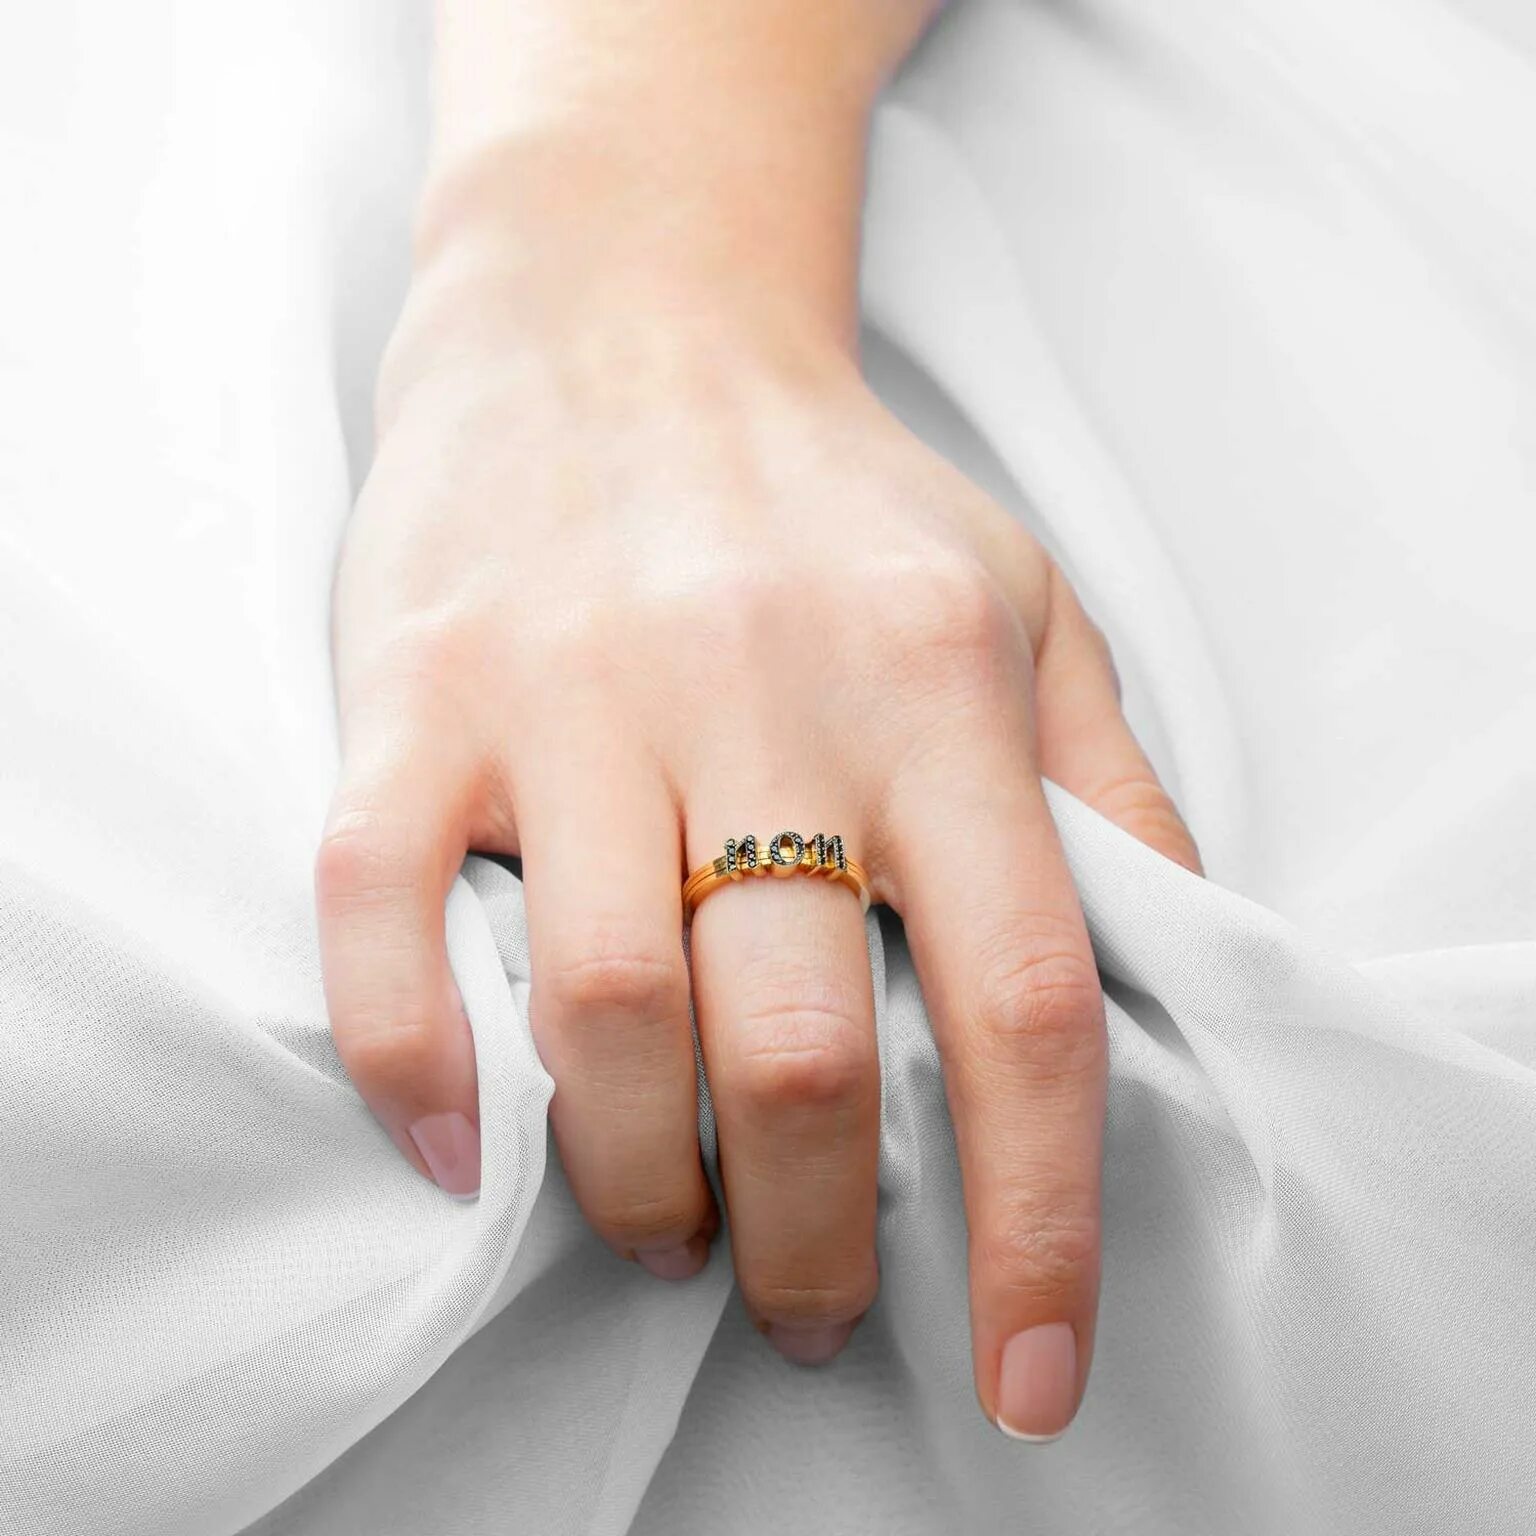 Обручальное кольцо на пальце. Свадебные кольца на пальцах. Кольцо для замужества. Обручальные кольца на руках.